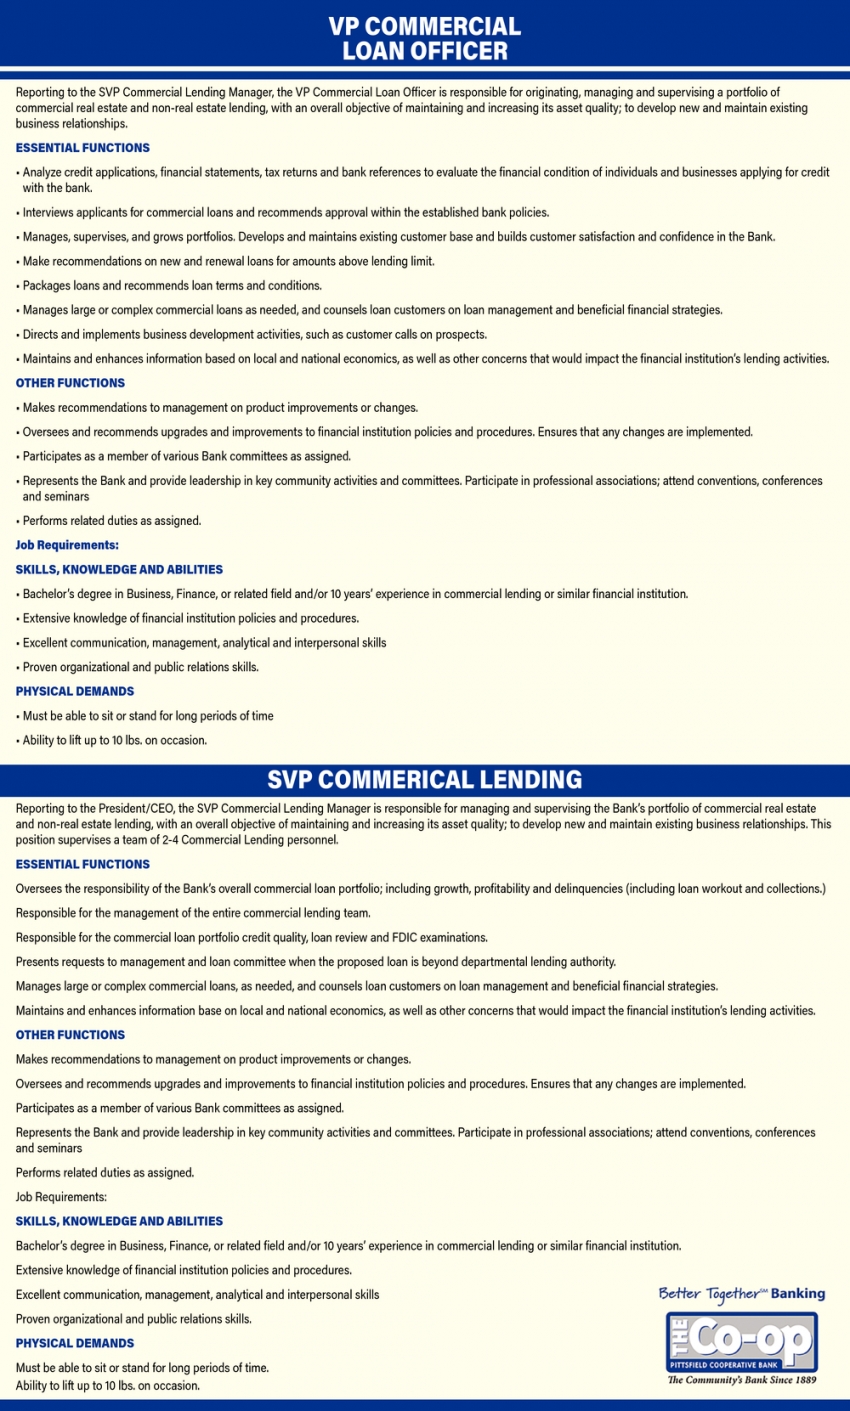 VP Commercial Loan Officer - SVP Commercial Lending